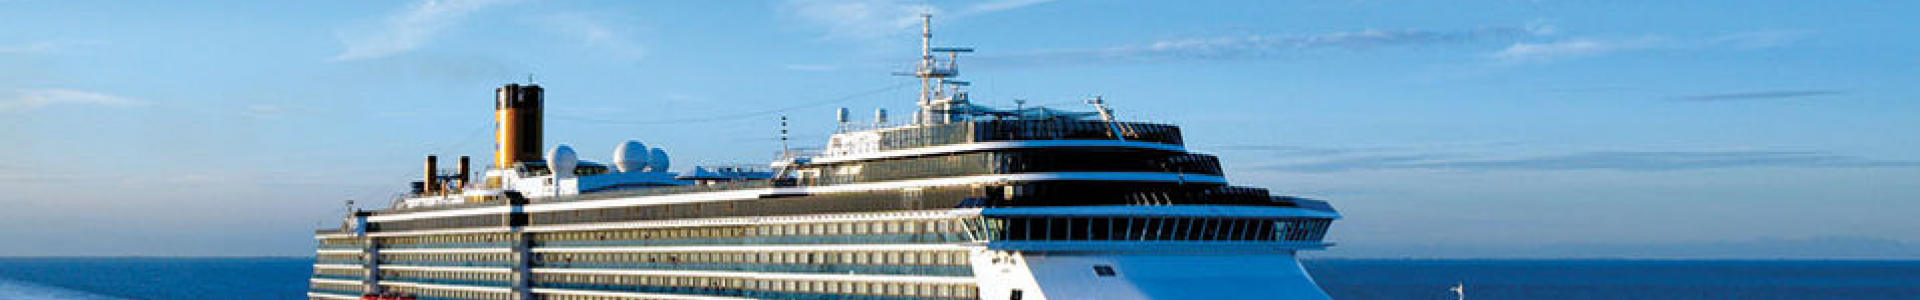 Voyage Privé : ventes flash croisières 8j/7n en Costa 4*, jusqu'à - 65%